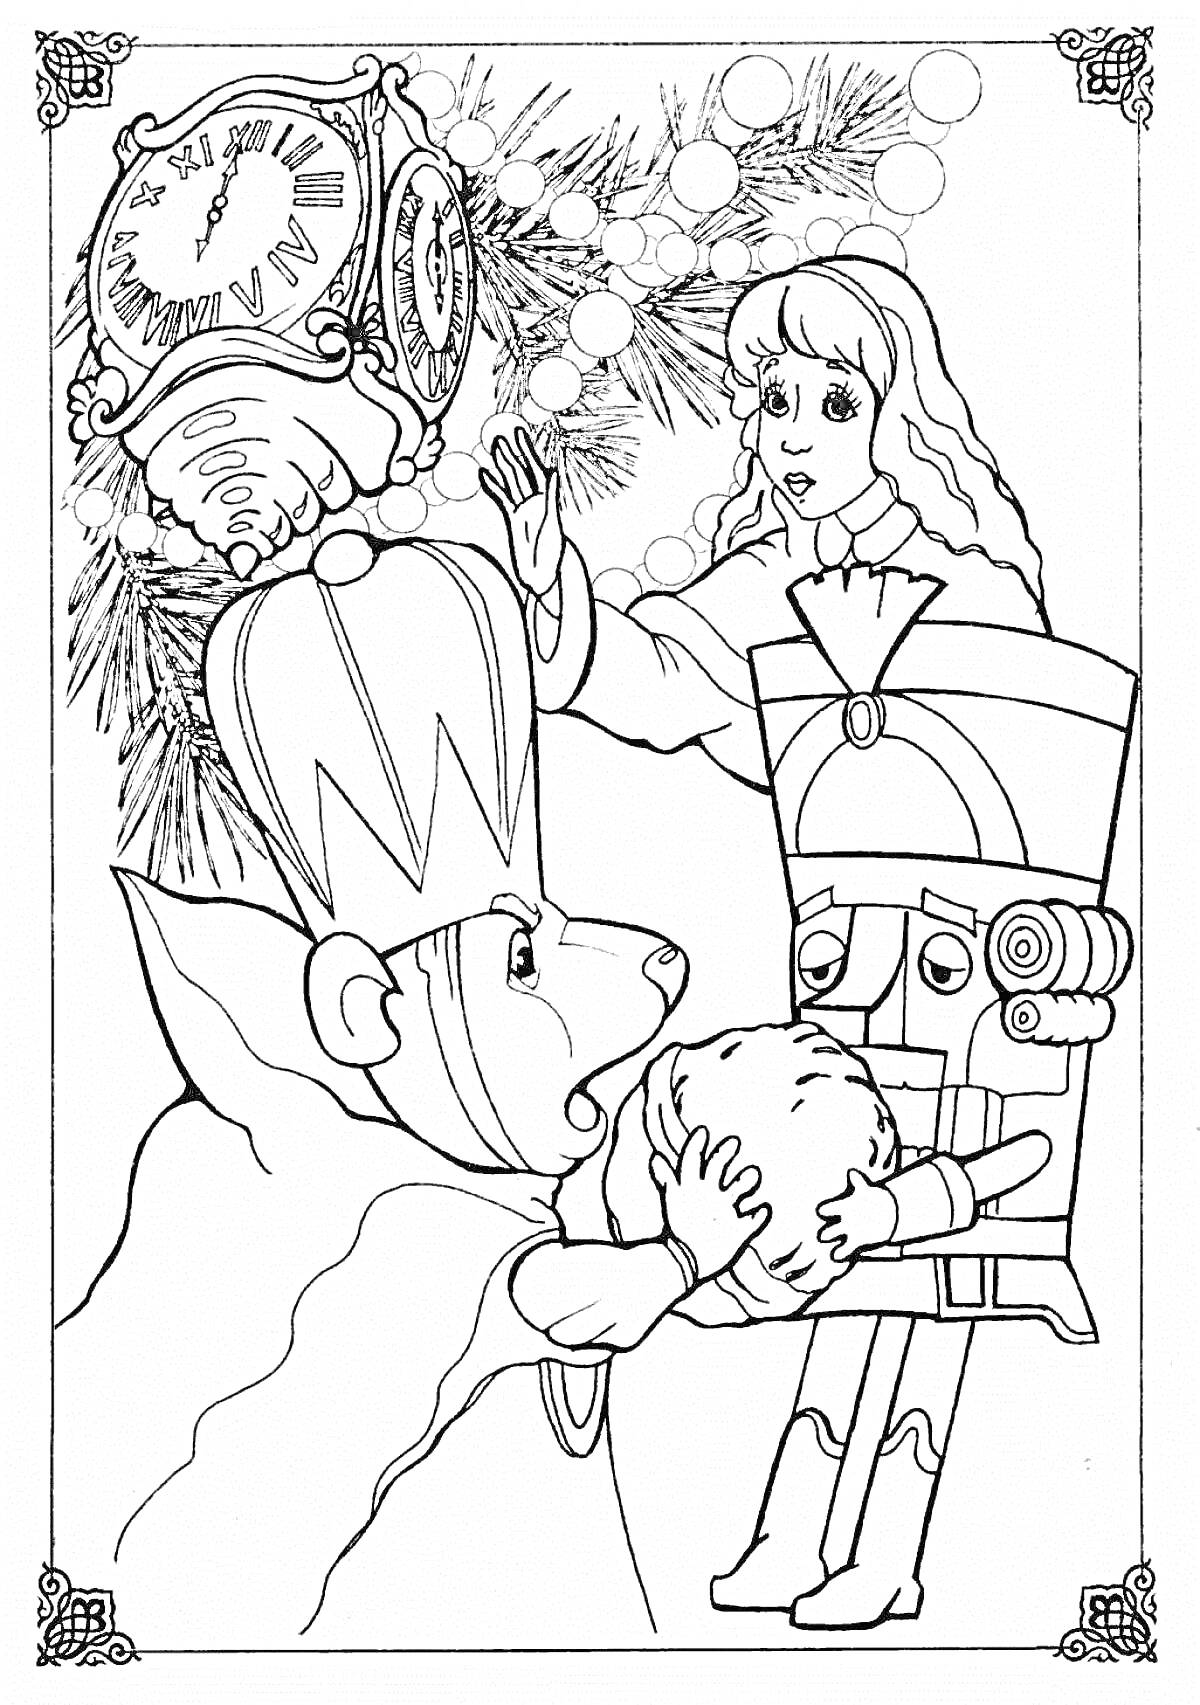 Щелкунчик, Мышиный король и девушка у часов с елочными ветками